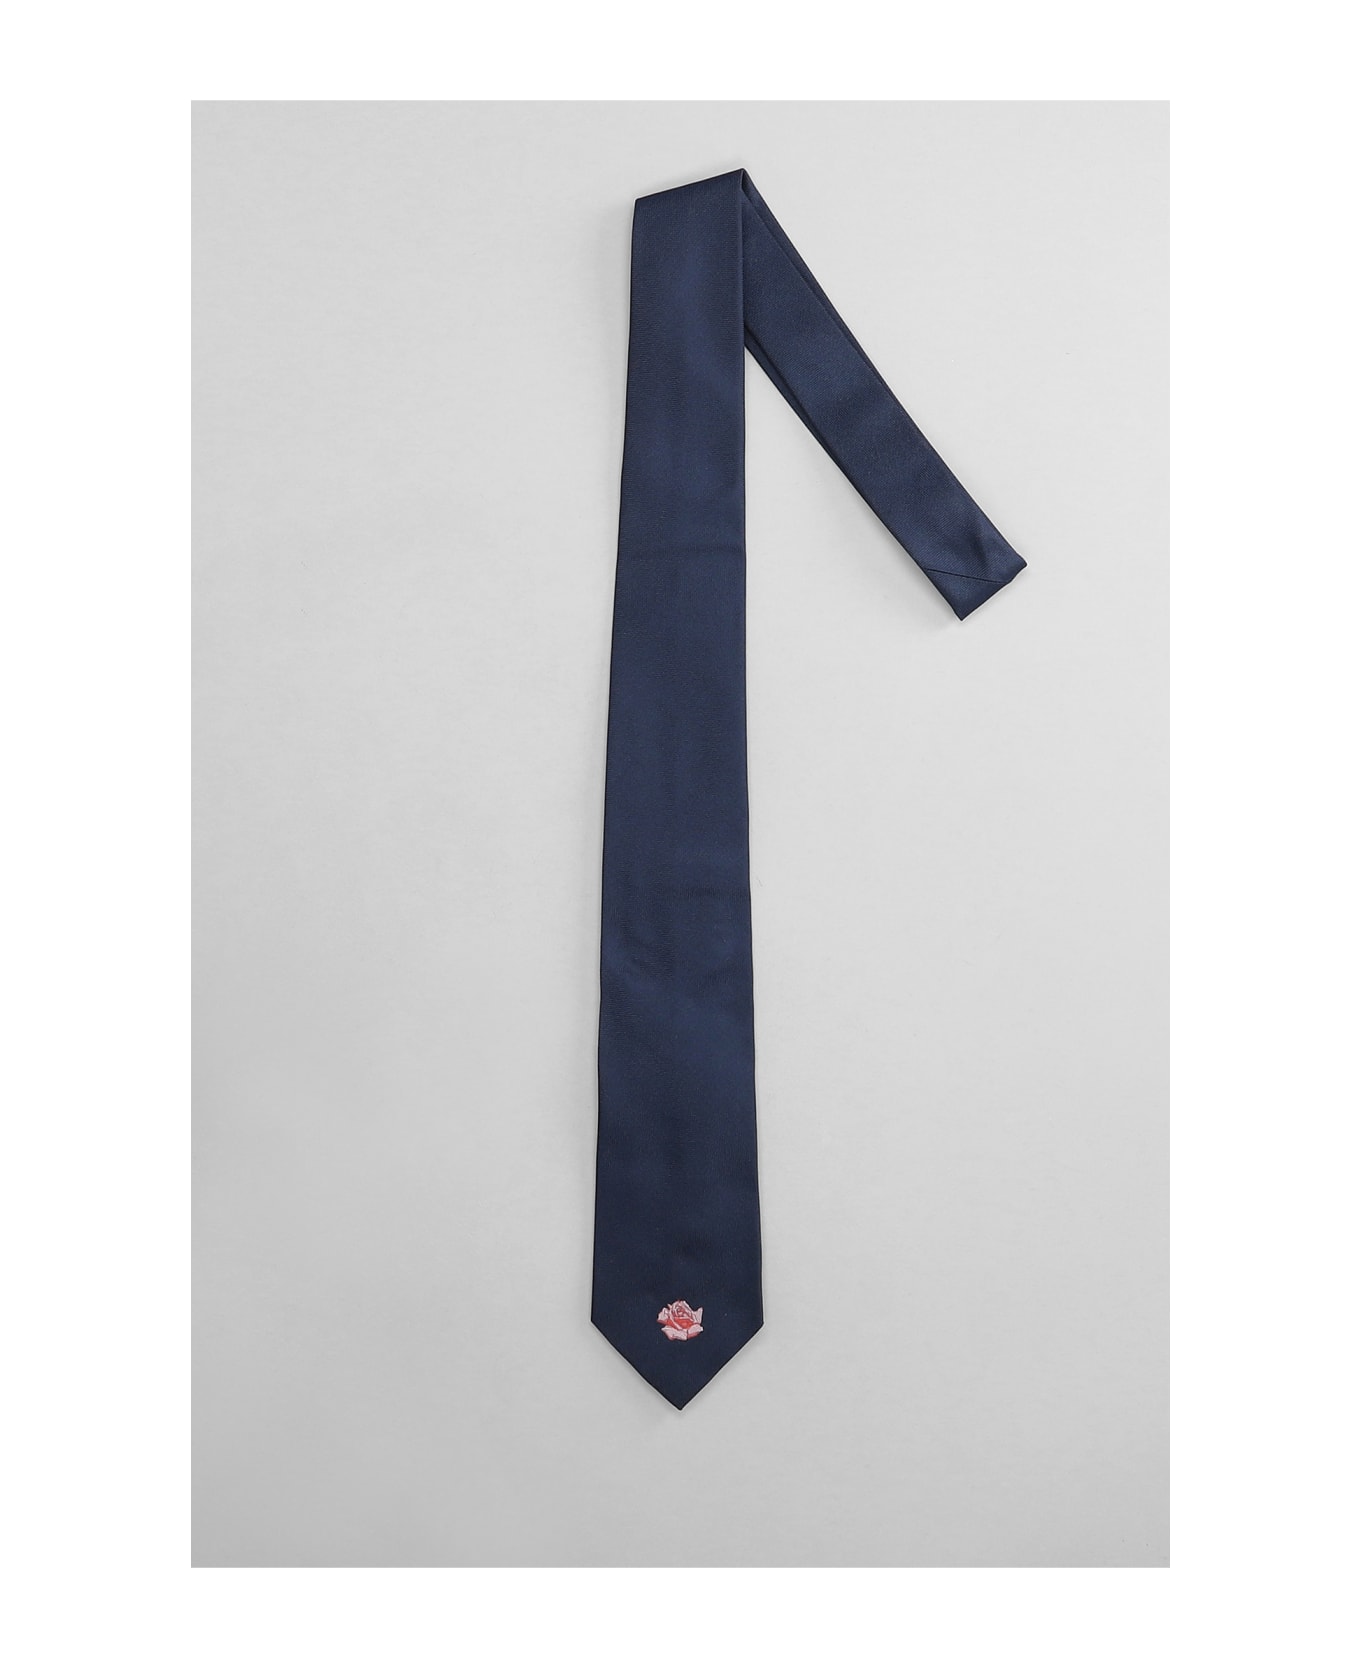 Kenzo Tie In Blue Silk - blue ネクタイ